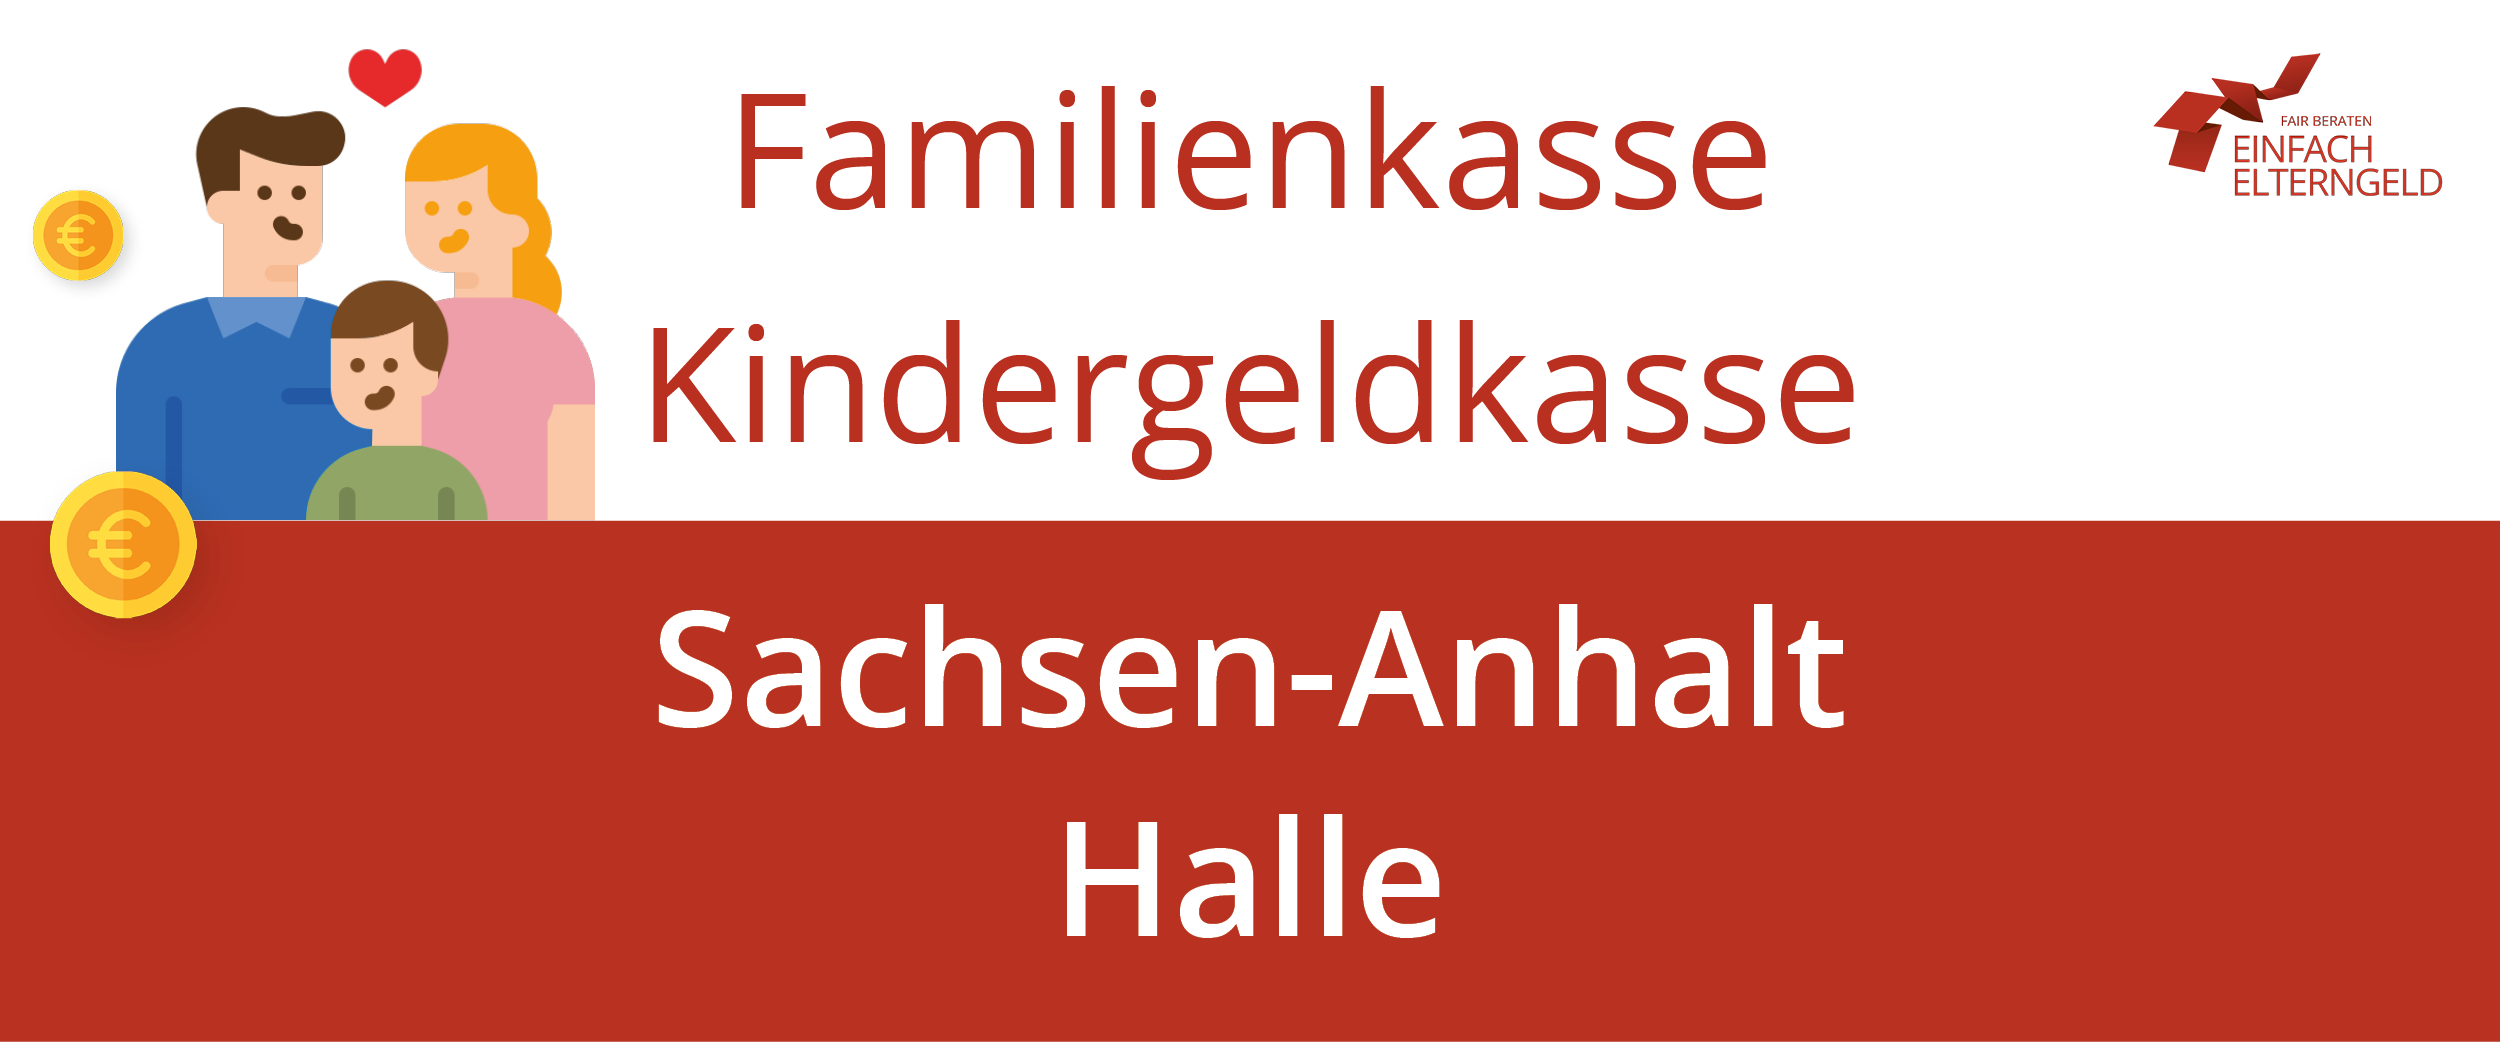 Erfahren Sie mehr über die Familienkasse Kindergeldkasse Sachsen-Anhalt Halle.